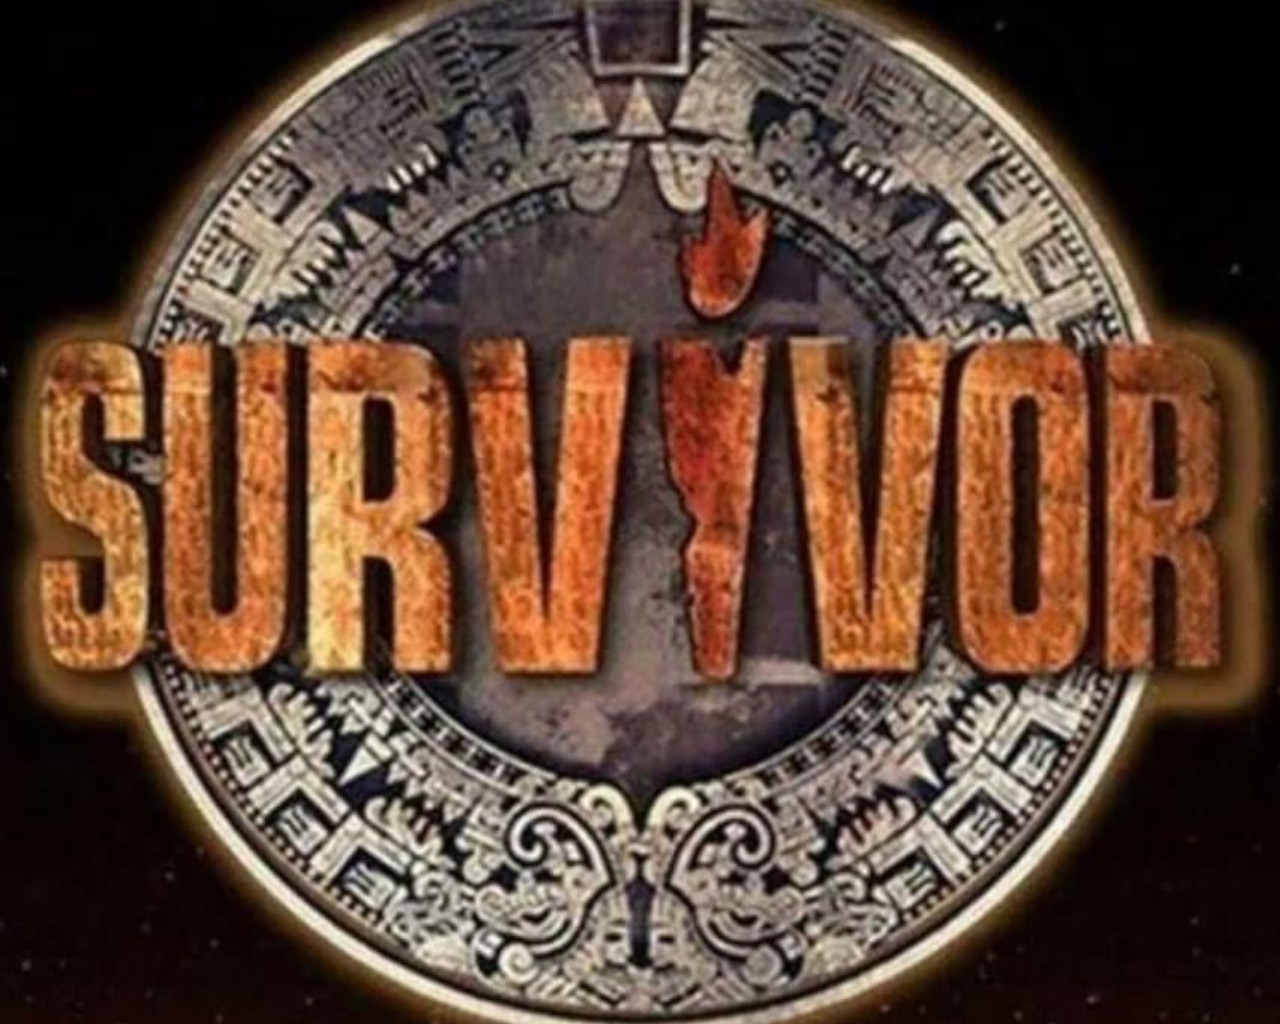 survivor 4, survivor 4 ασυλία,survivor 4 spoiler,survivor 4 skai,survivor 4 παίκτες,survivor 4 trailer,survivor 4 αποχωρηση,survivor 4 διασημοι,survivor 4 μαχητες,survivor 4 νέες προσθηκες,survivor 4 νεοι παικτες,survivor 4 κοκκινοι,survivor 4 μπλε,survivor spoiler,survivor trailer,survivor 2021,survivor greece